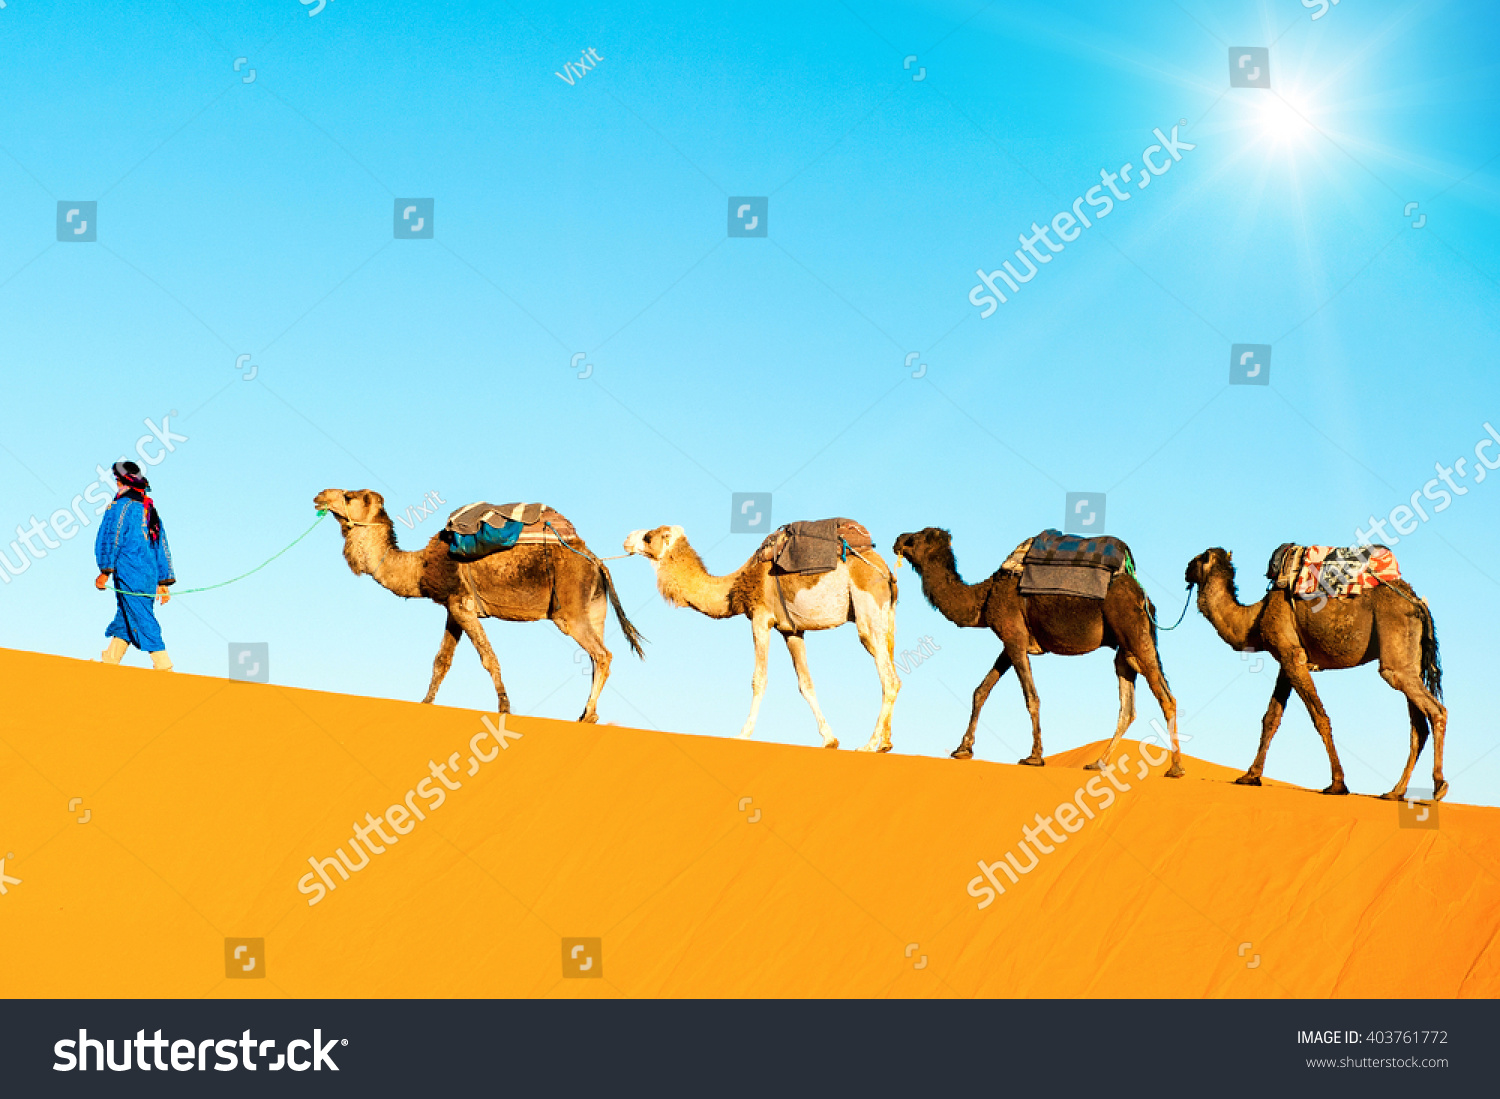 Camel Caravan On The Sahara Desert Stock Photo 403761772 : Shutterstock